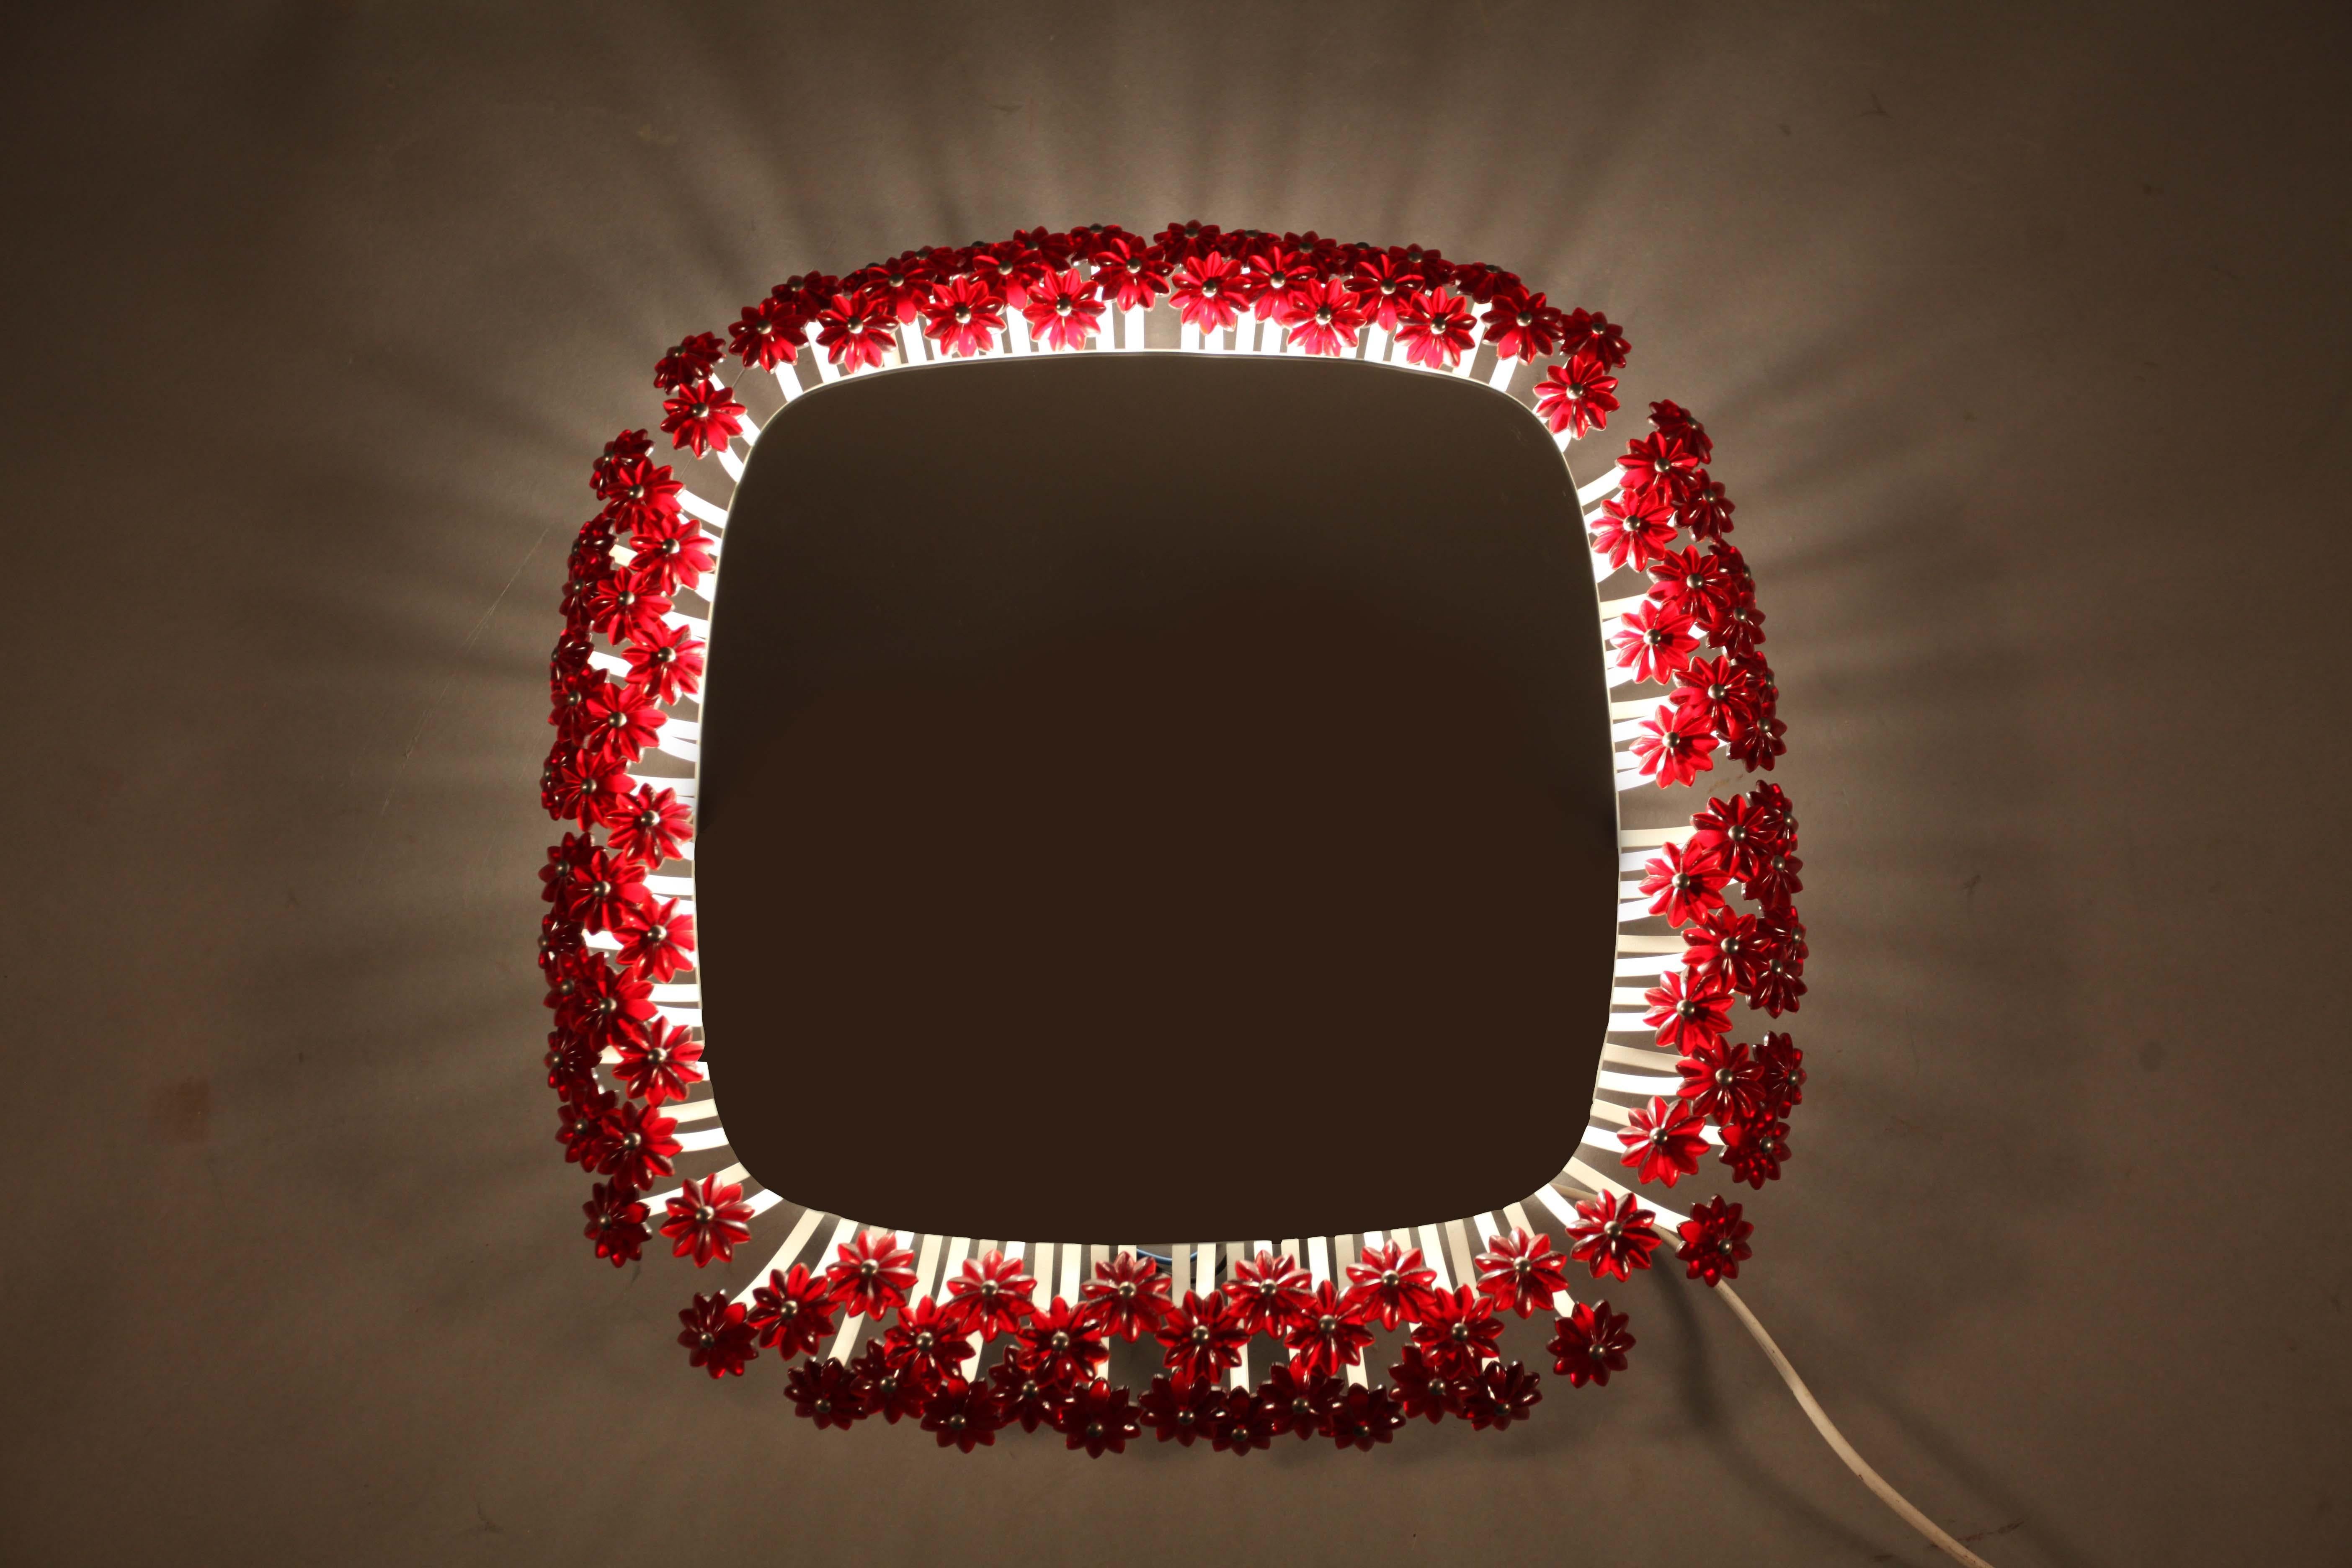 Illuminated Mirror with Red Acrylic Flowers Designed Emil Stejnar Vienna 1950 (Österreichisch)